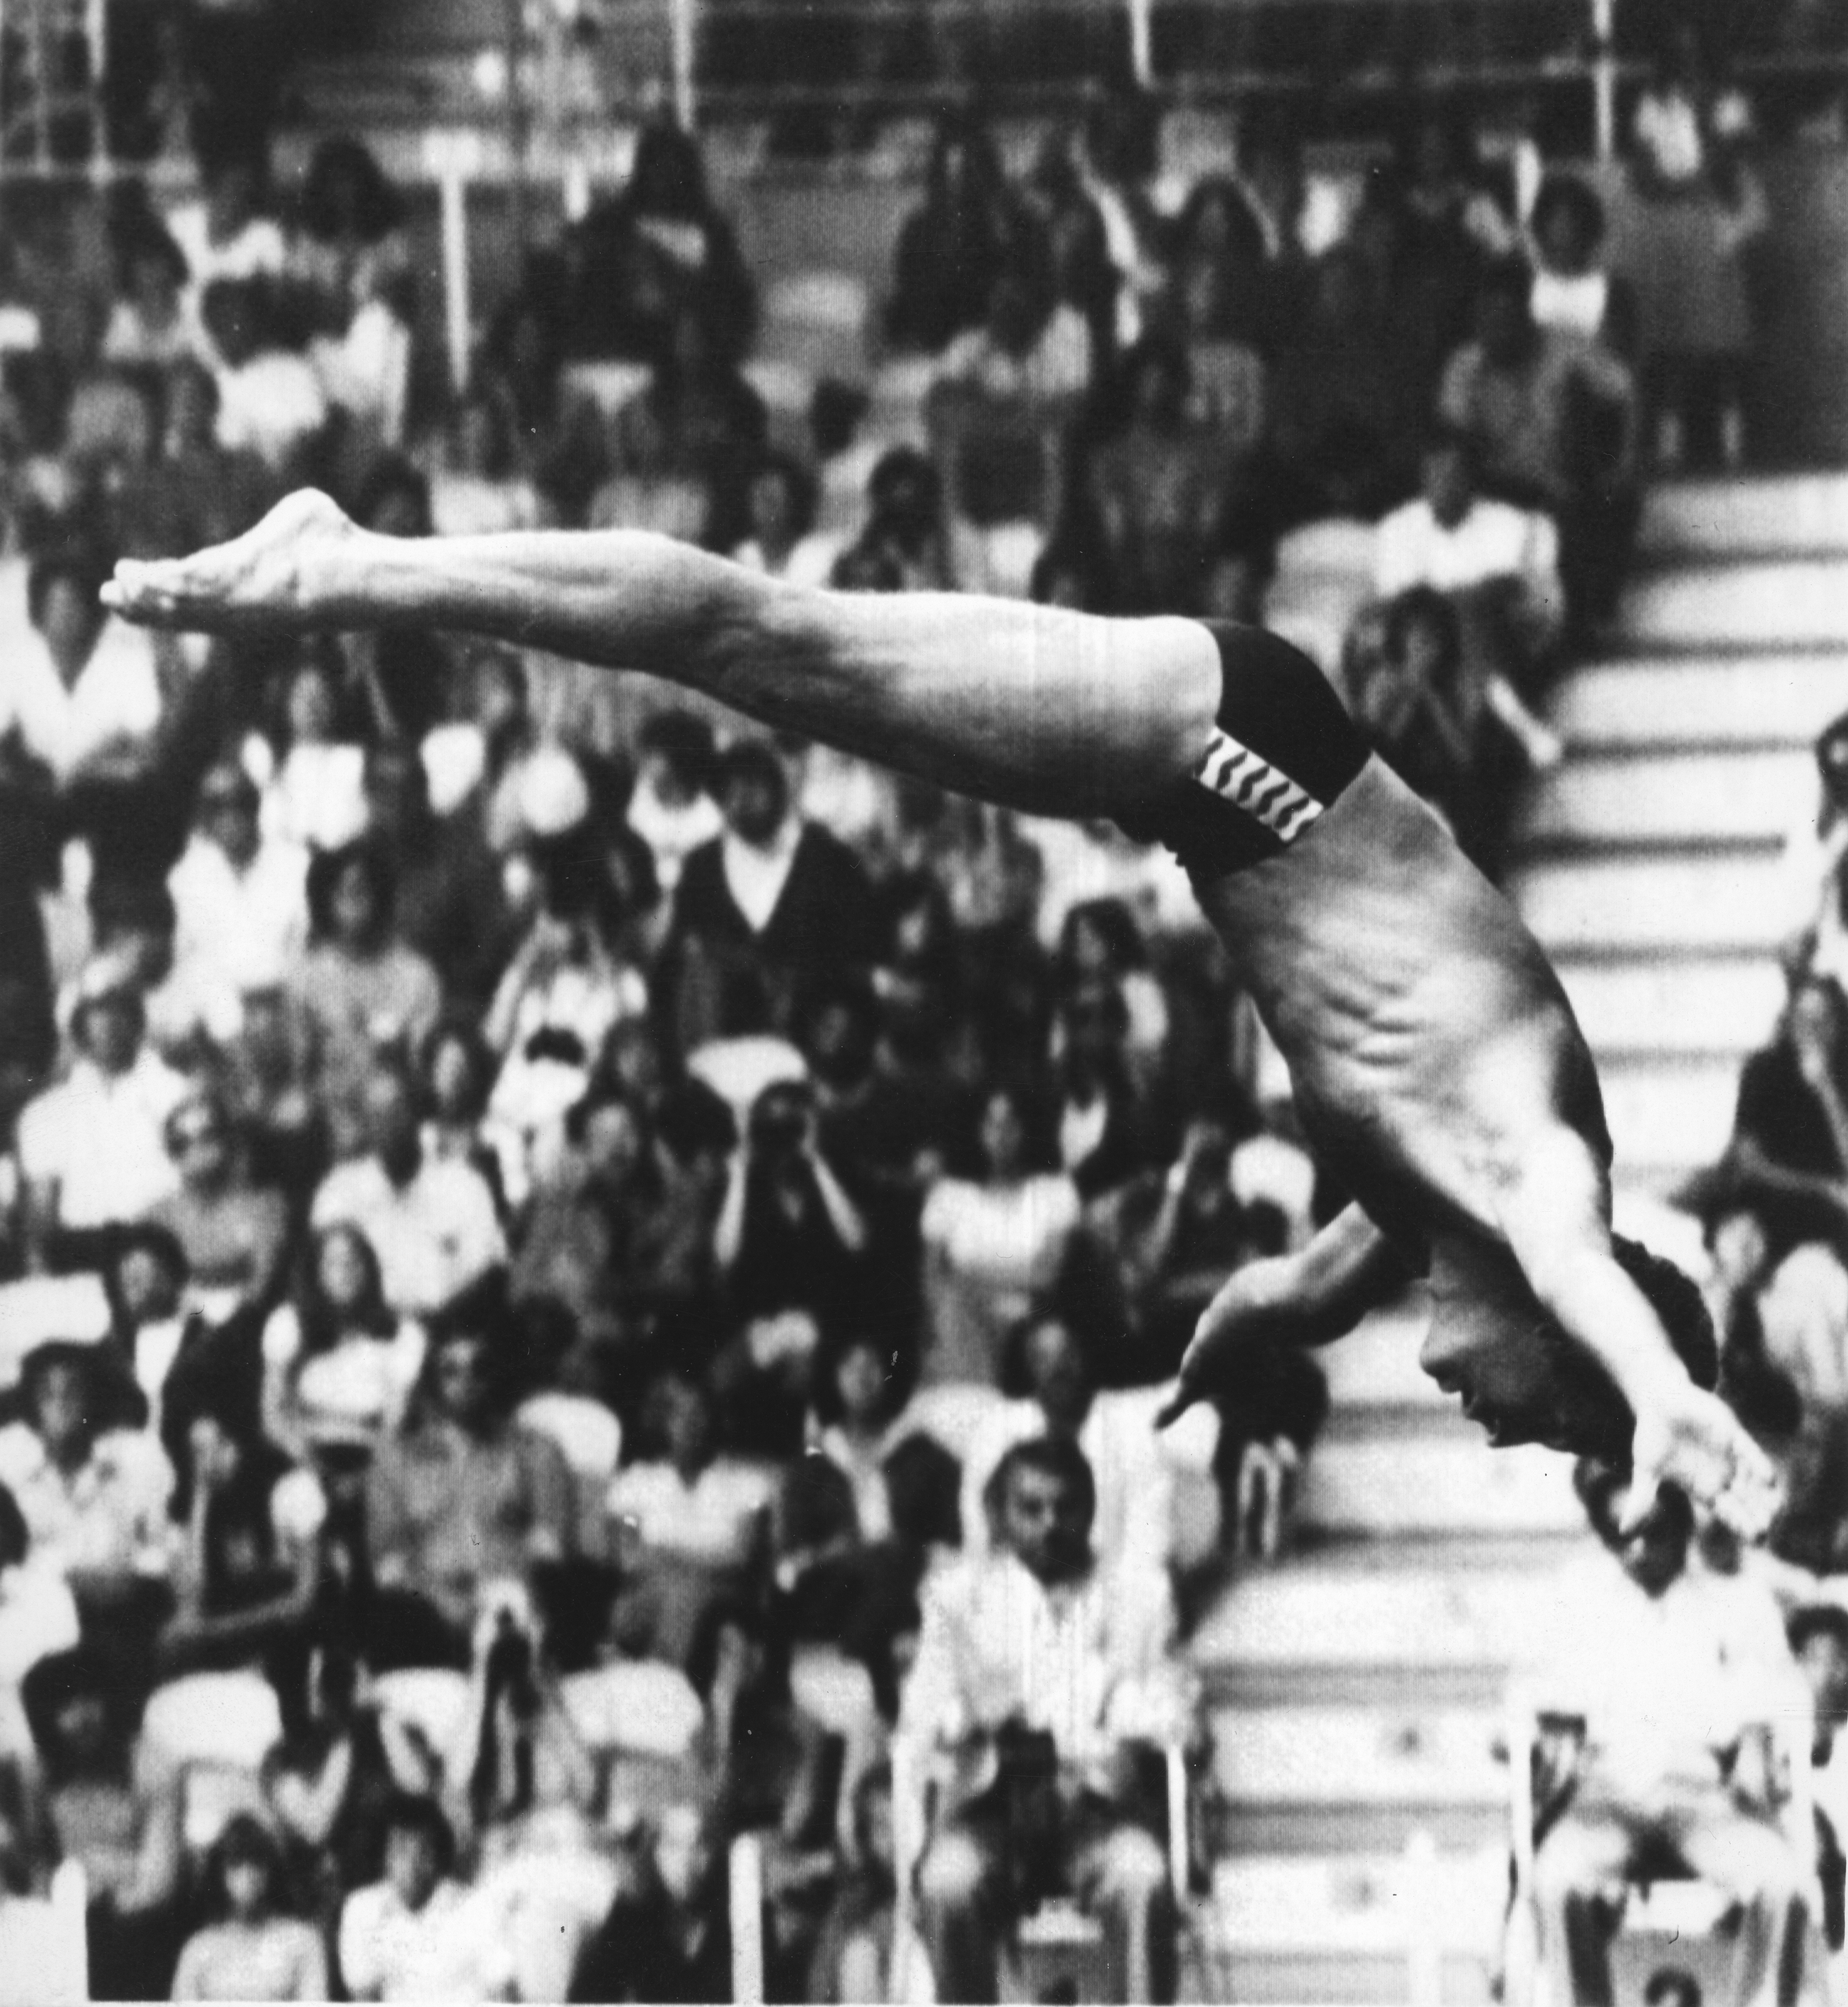 Messico 1968, il primo tuffo d'oro olimpico di Klaus Dibiasi